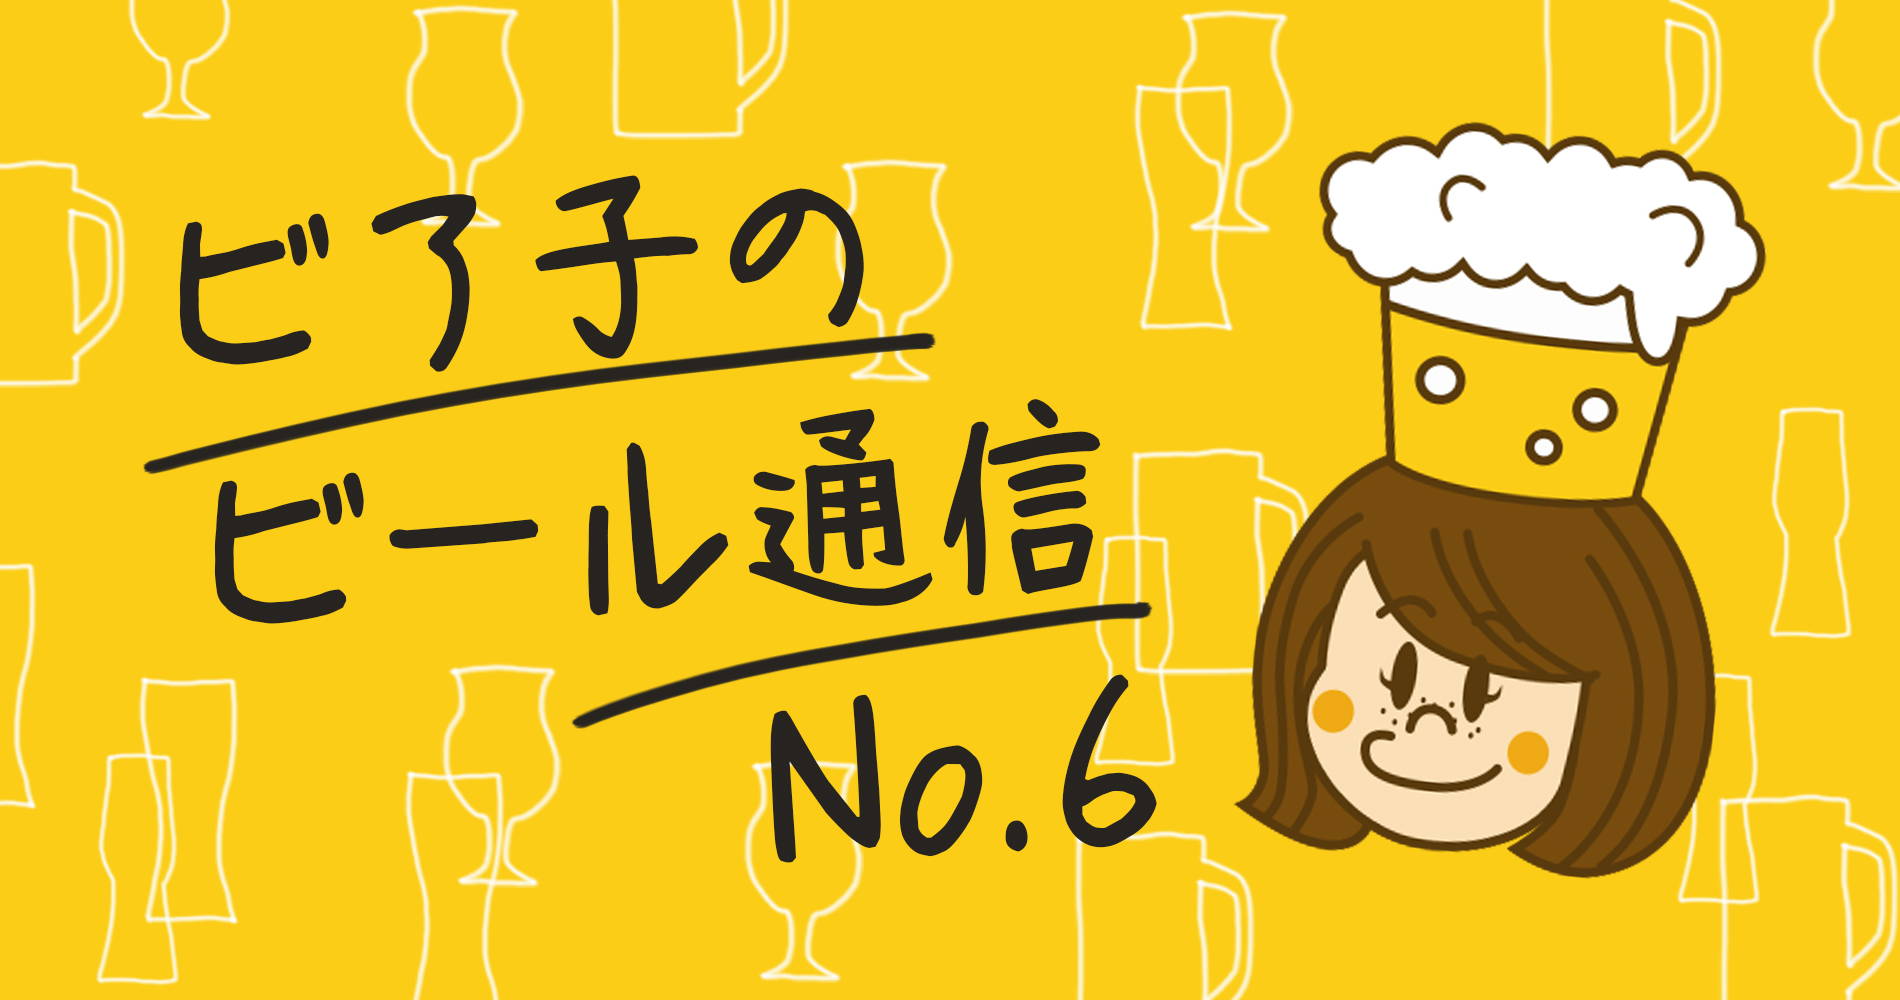 ビア子のビール通信No.5